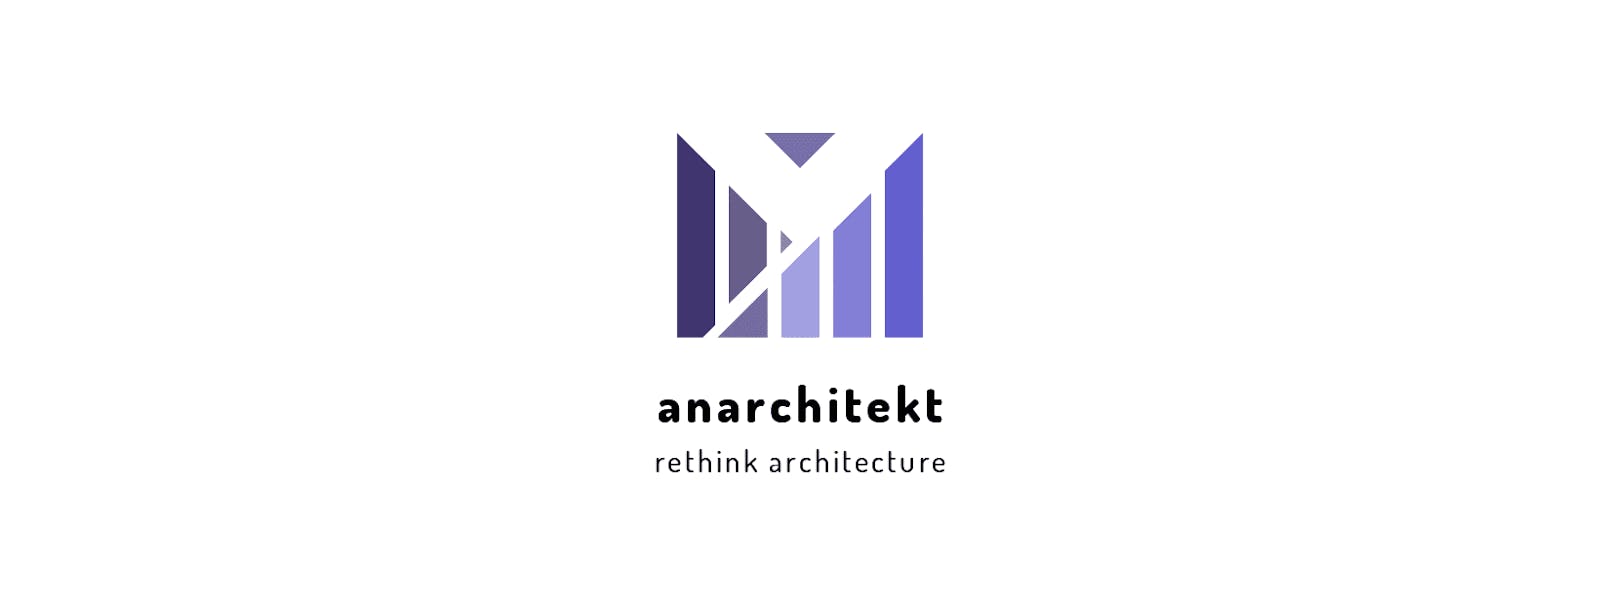 Anarchitecture